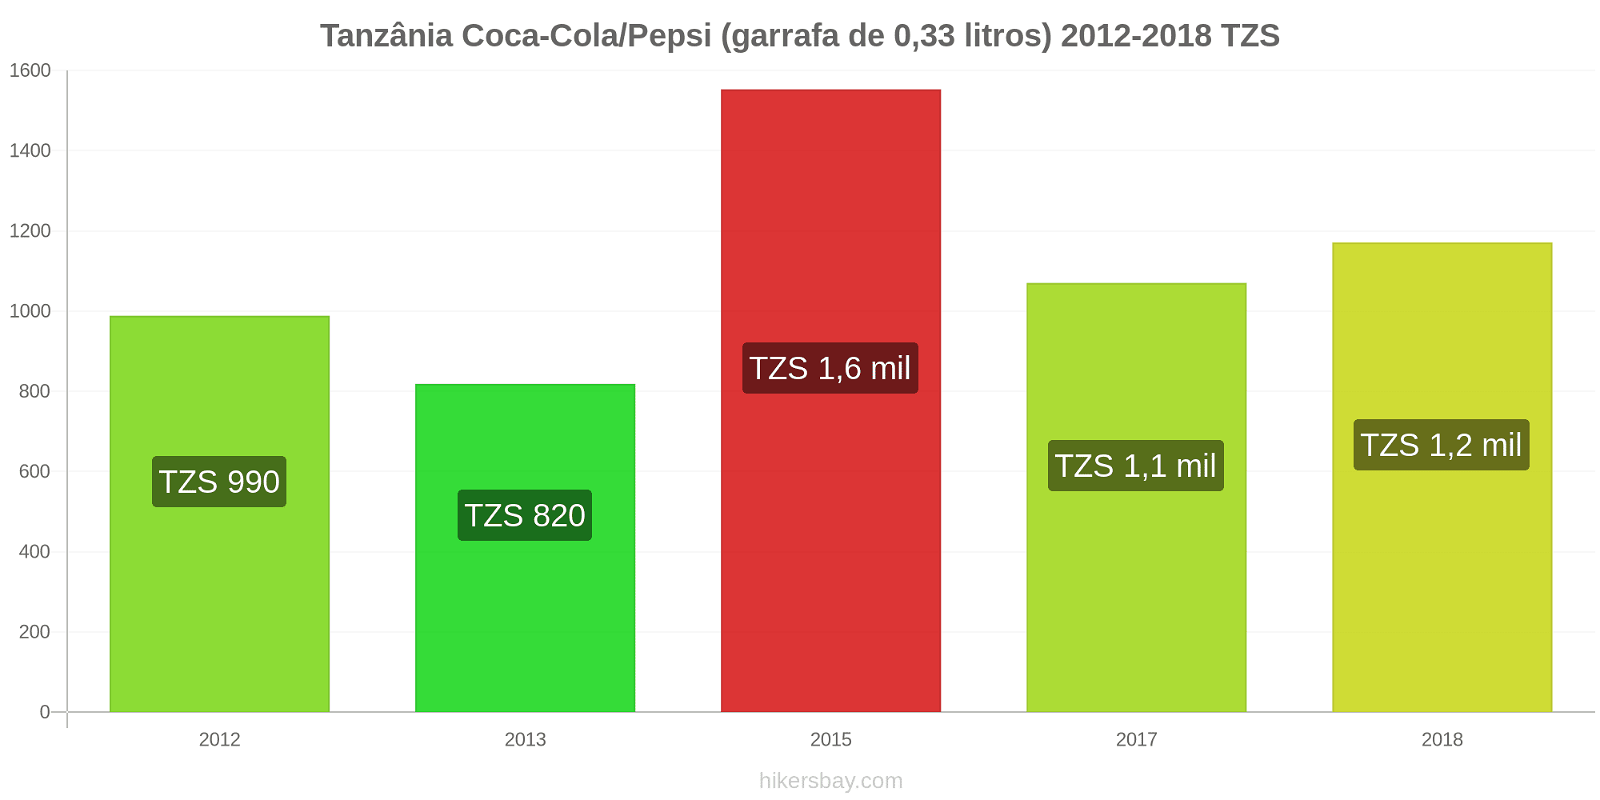 Tanzânia mudanças de preços Coca-Cola/Pepsi (garrafa de 0.33 litros) hikersbay.com